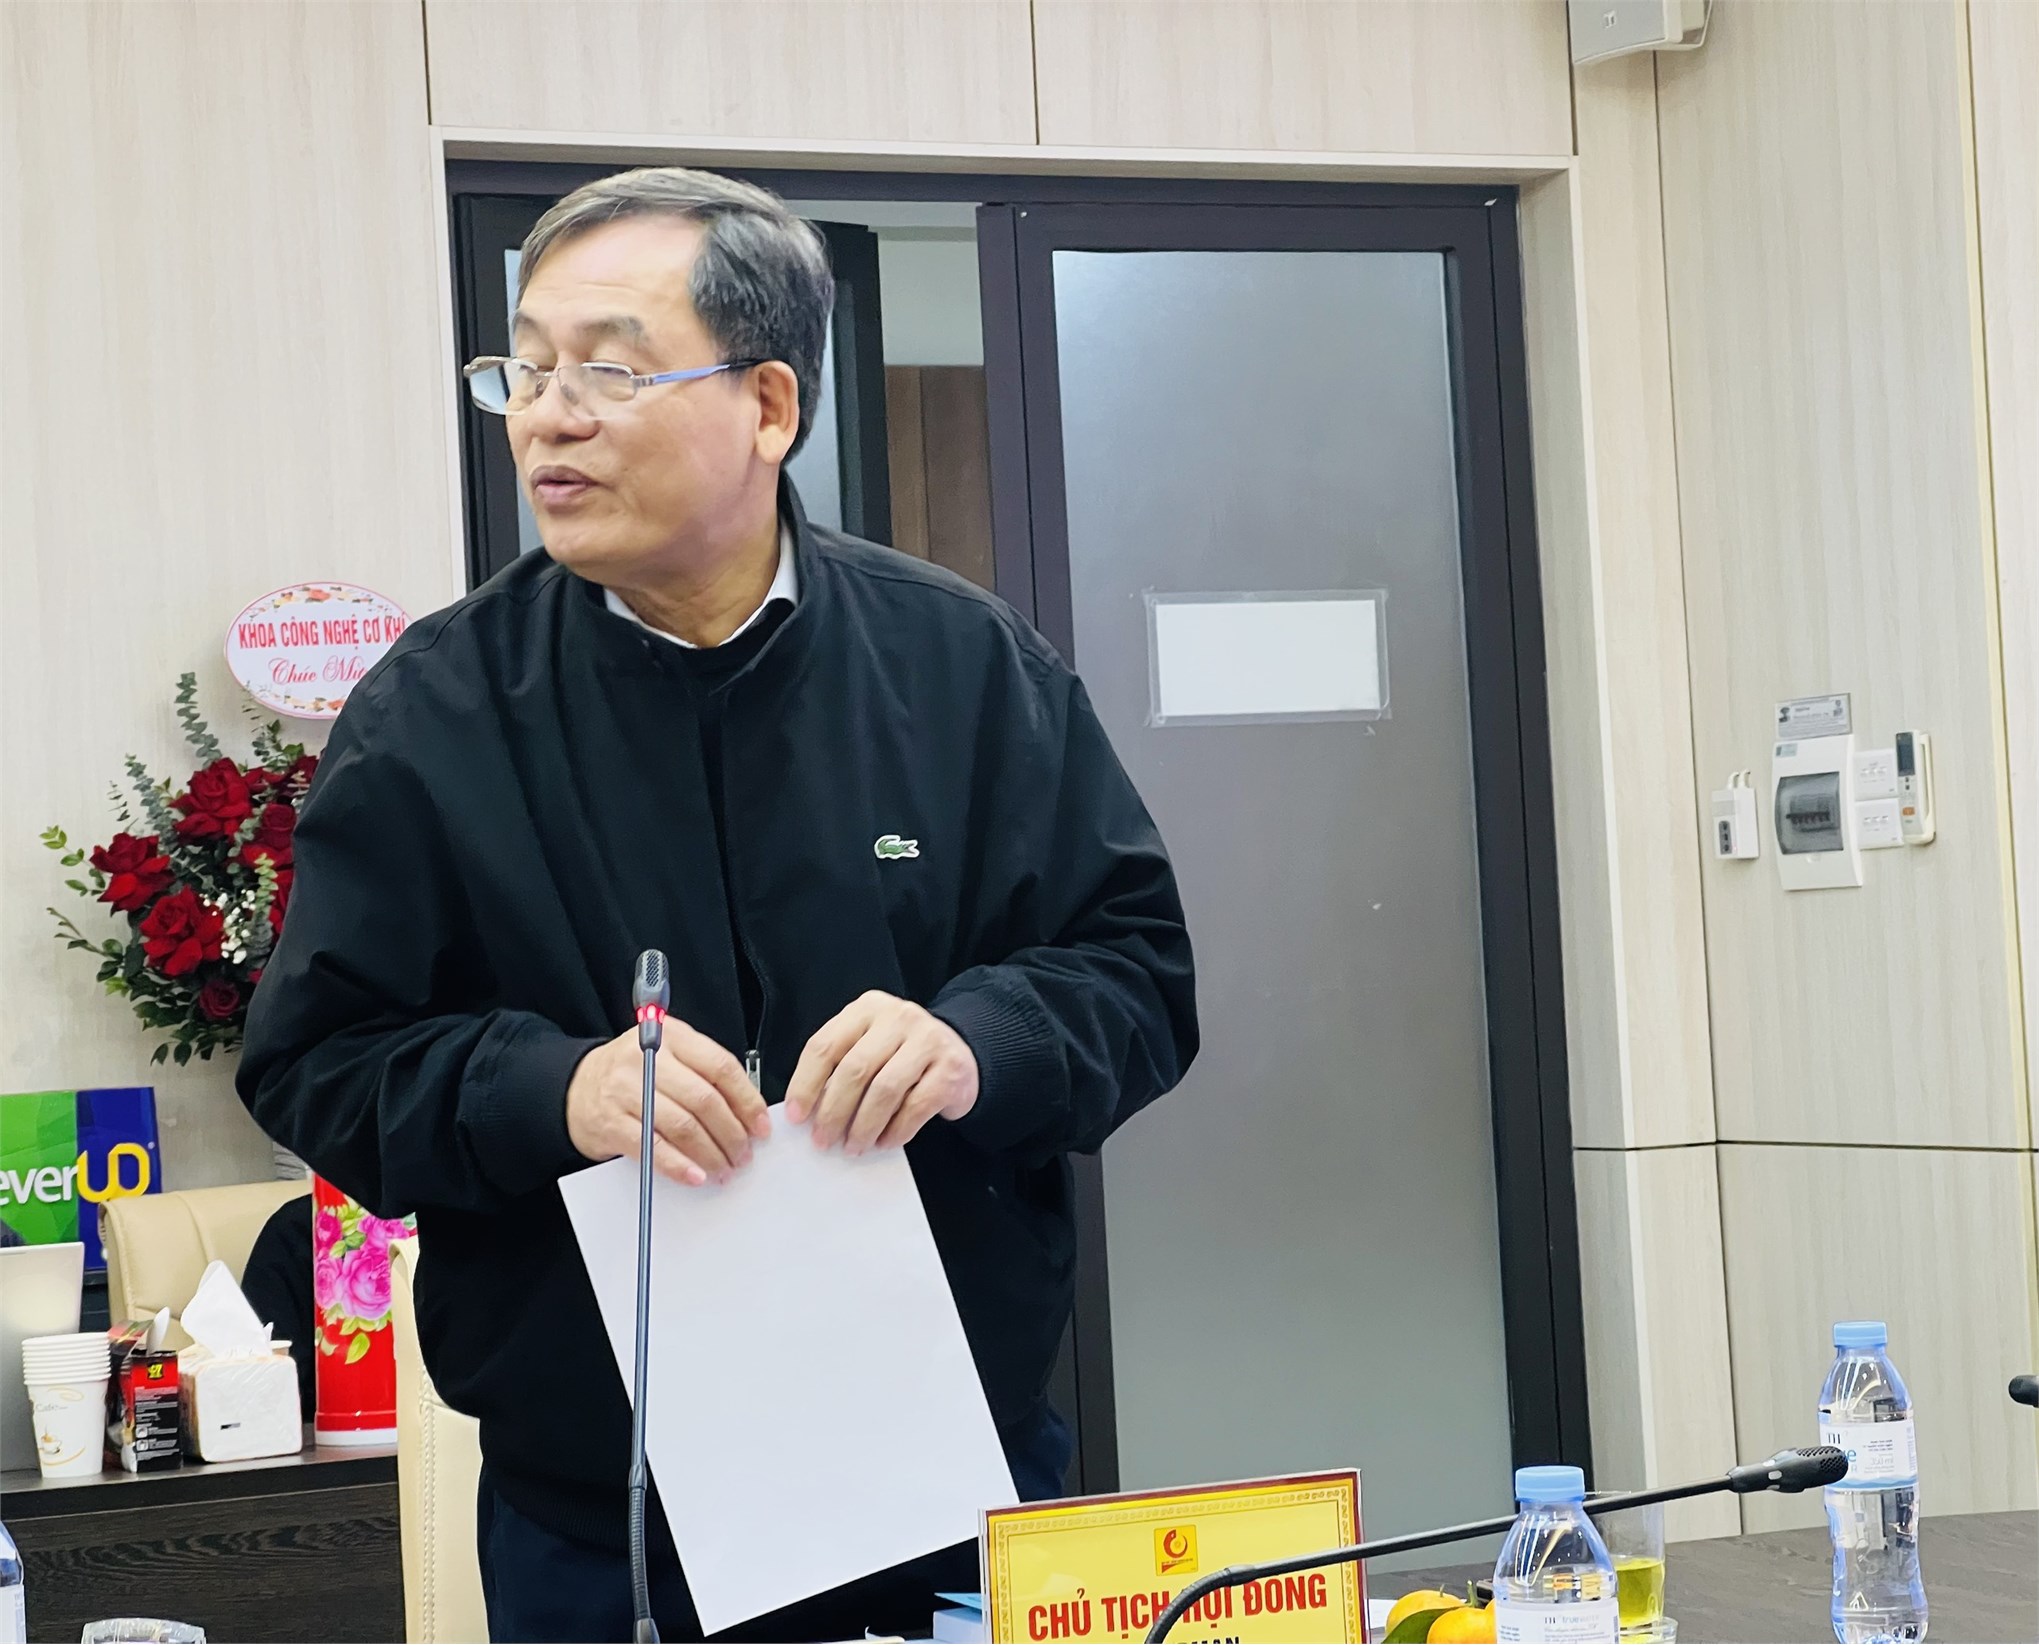 NCS Nguyễn Văn Cảnh hoàn thành bảo vệ luận án tiến sĩ cấp đơn vị ngành Kỹ thuật Cơ khí